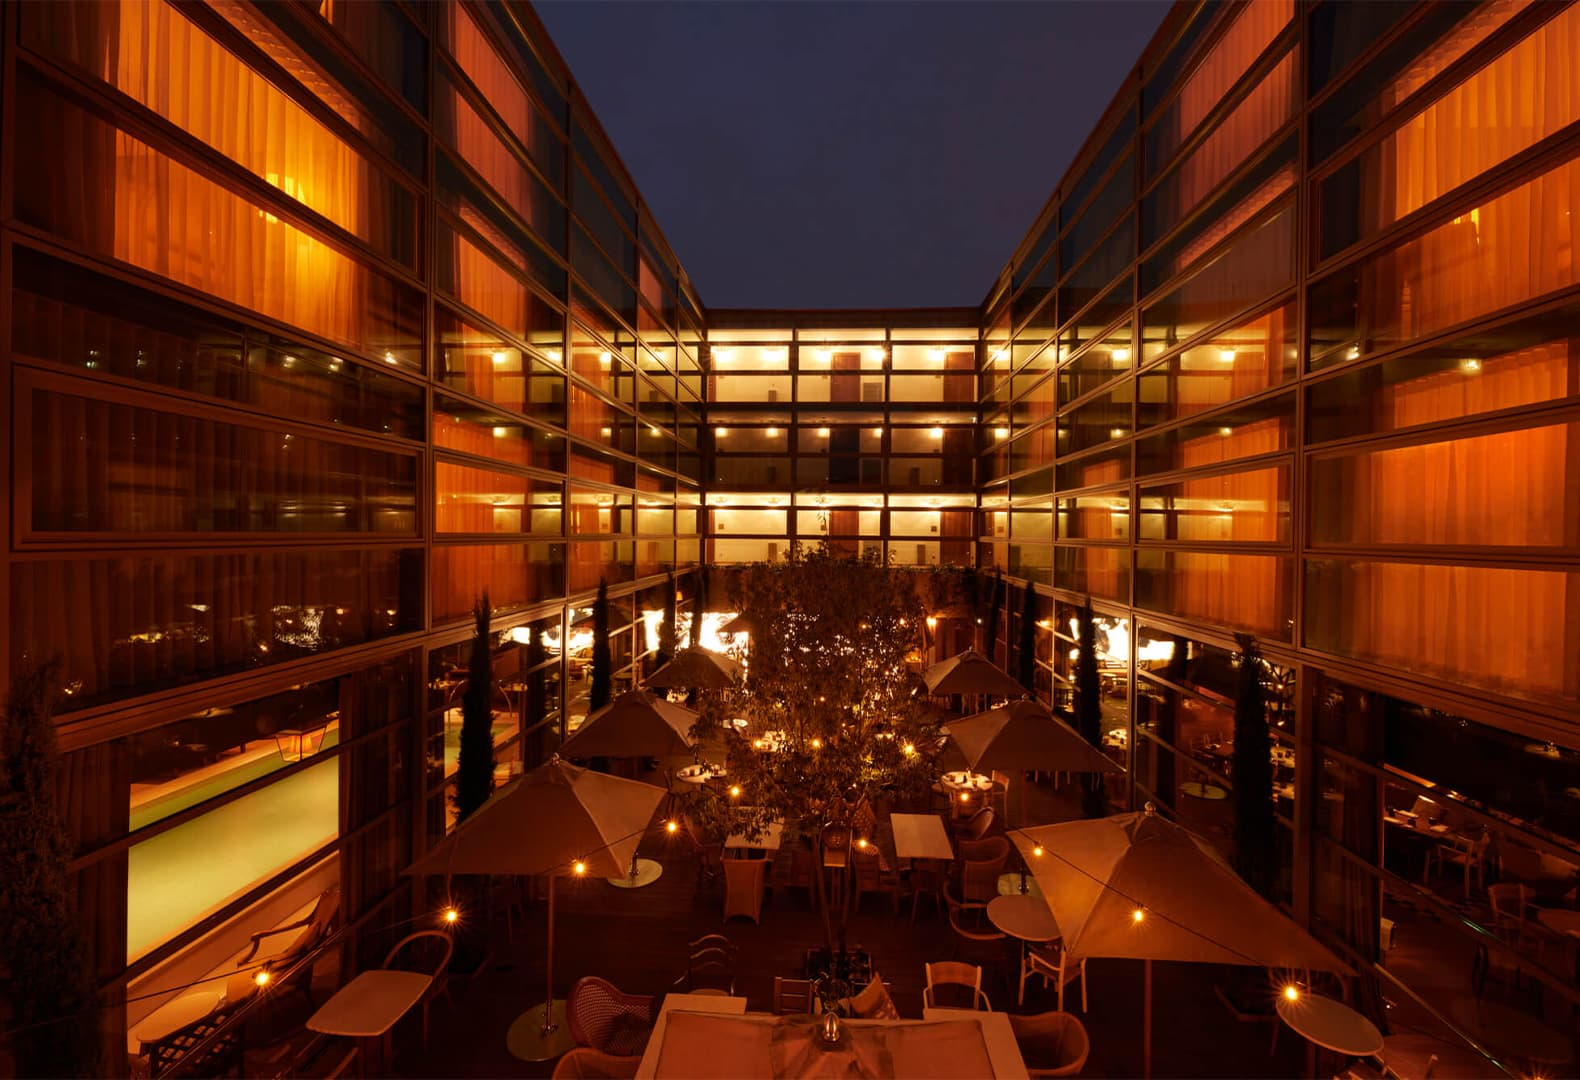 Отель Mondrian в Бордо по проекту Филиппа Старка